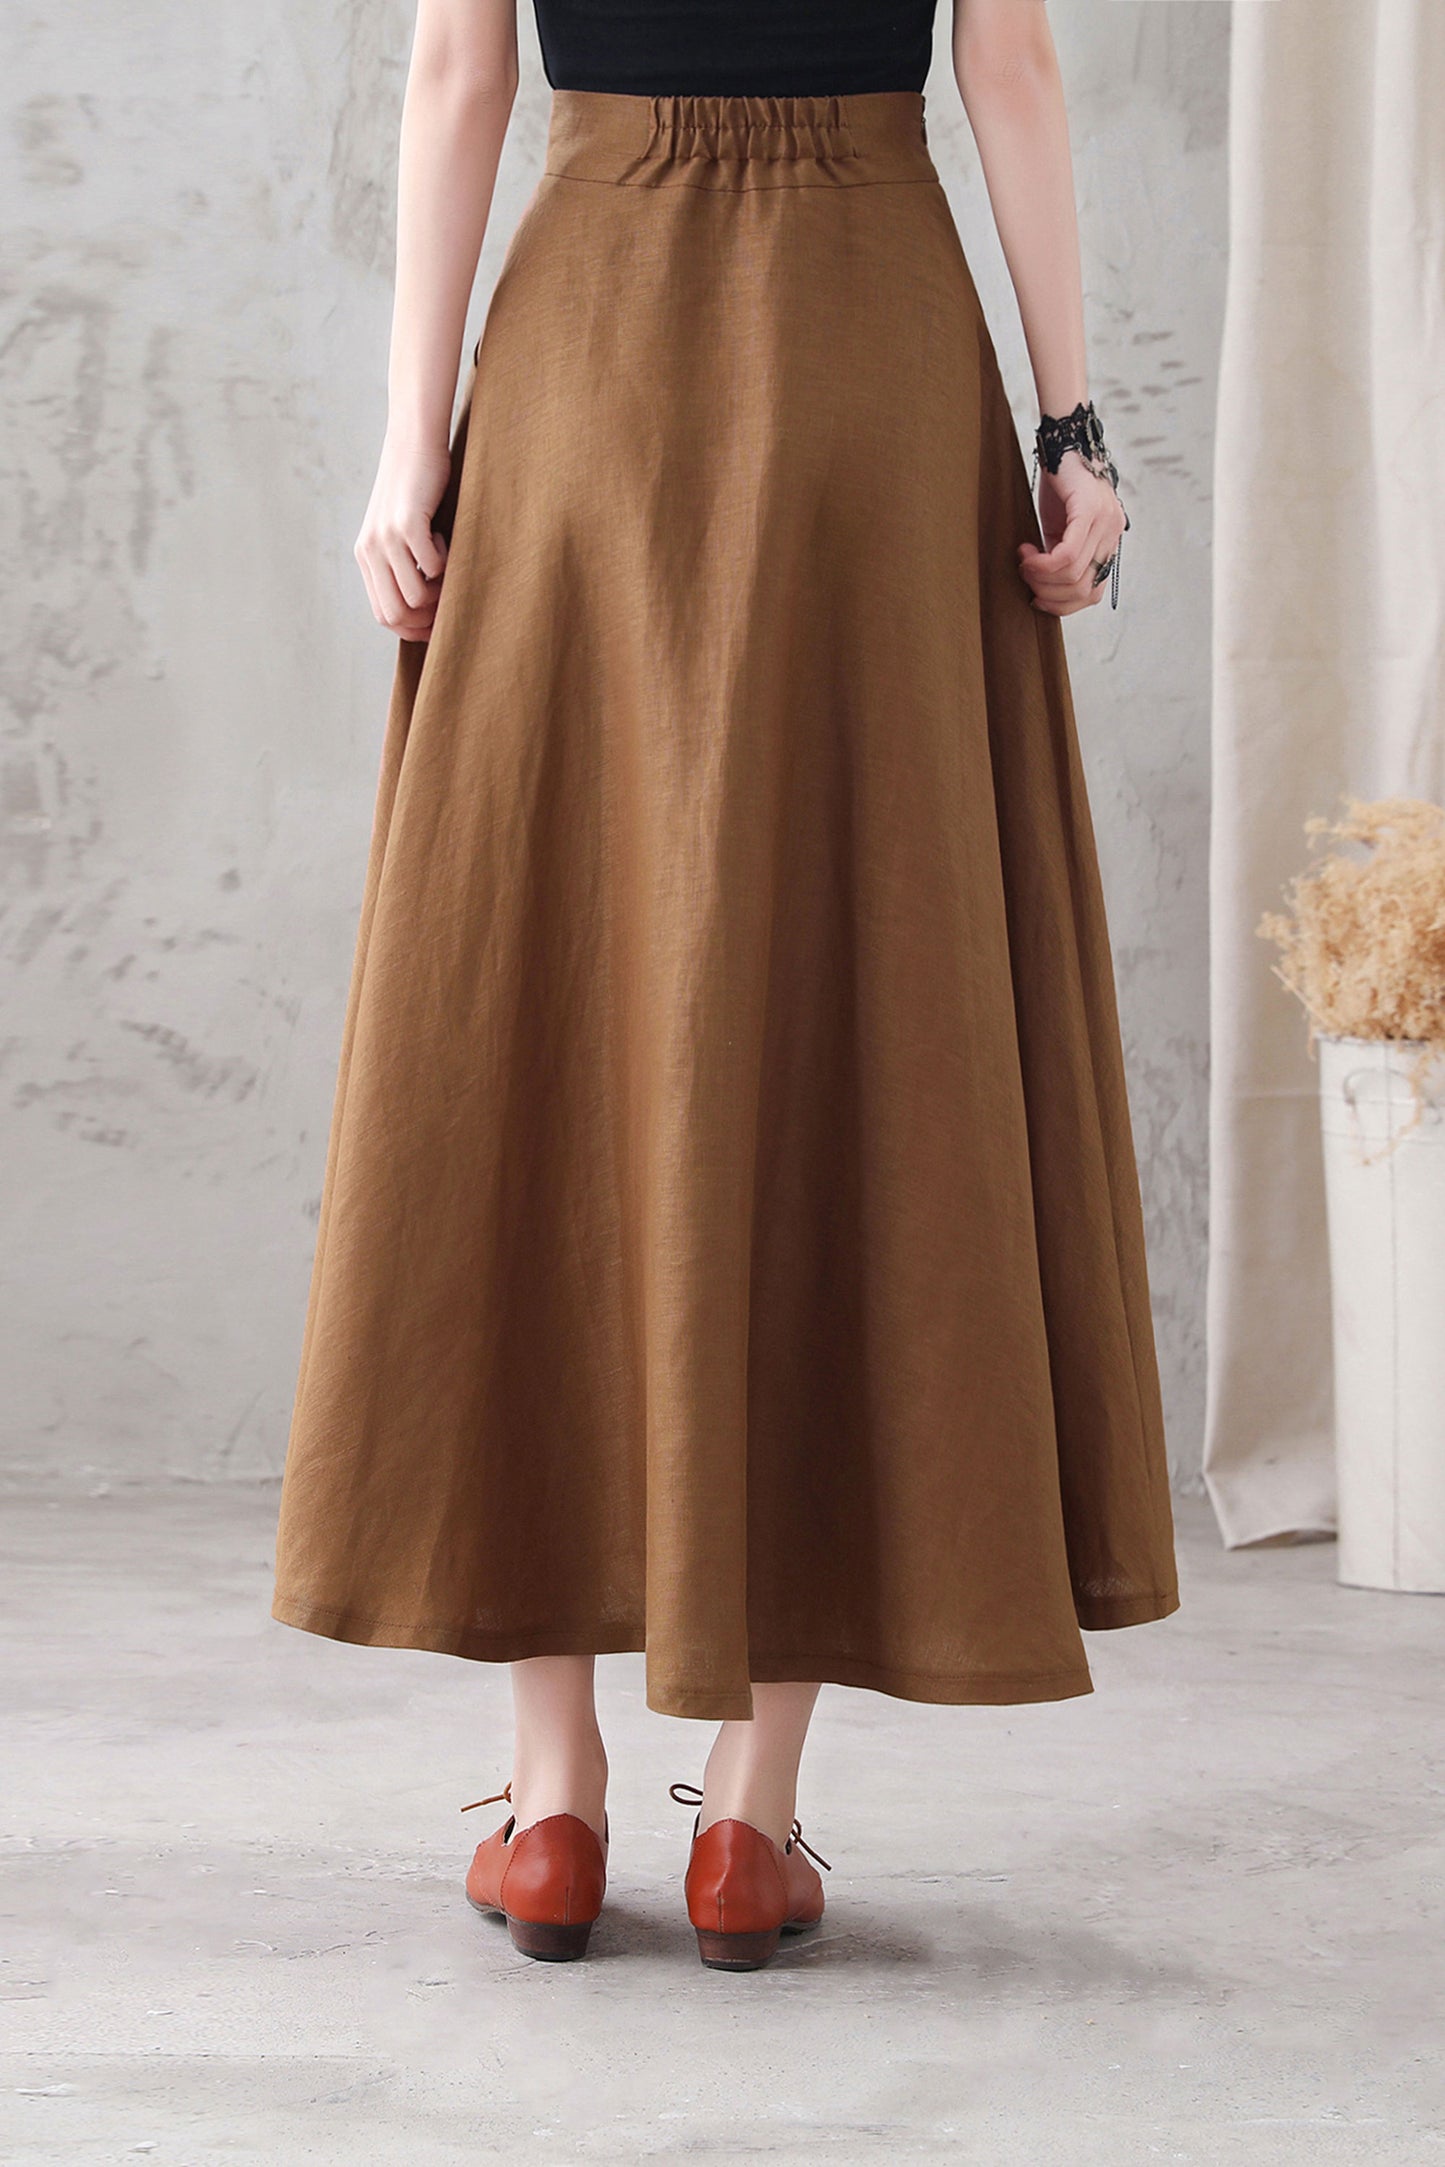 Brown Long Linen Maxi Skirt 3286